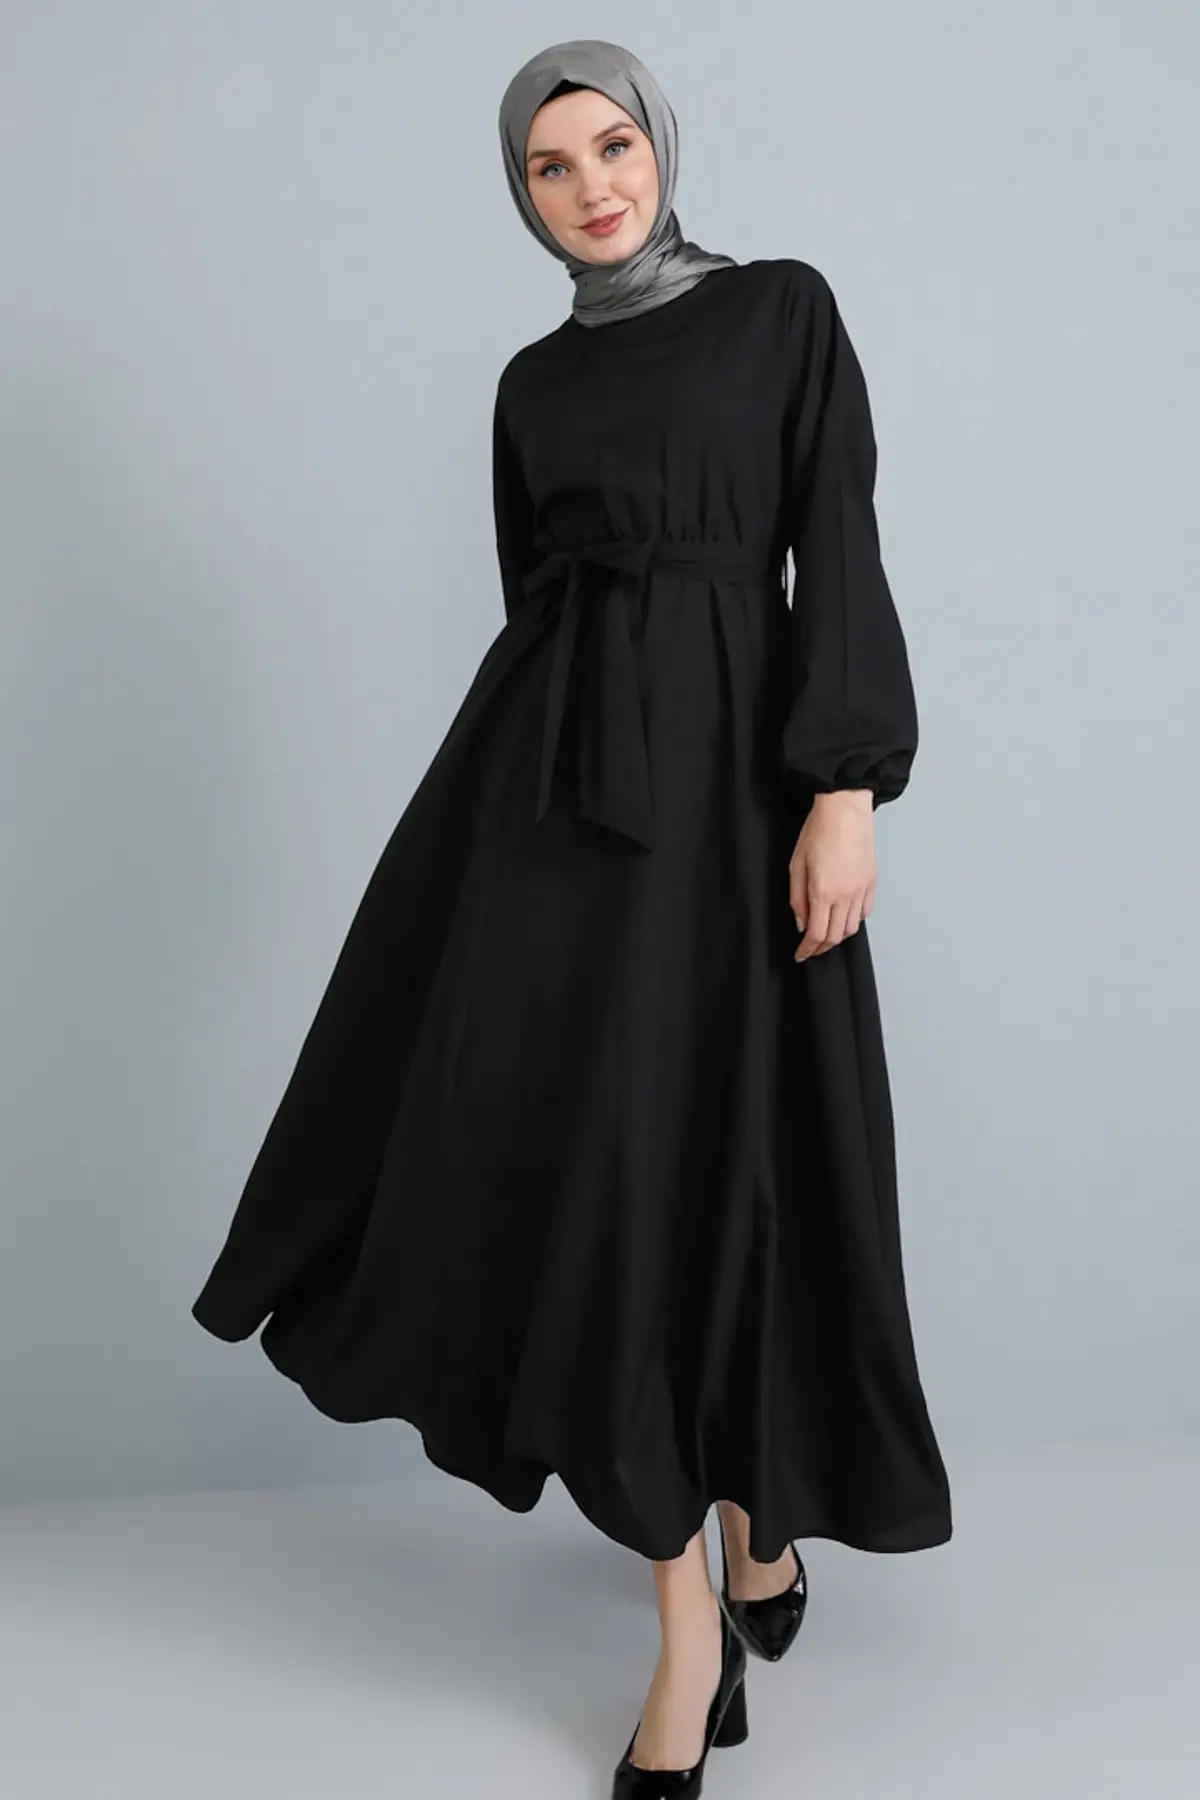 Kvinder med Lange Ærmer Kjole elastisk talje Mønster stor størrelse bomuld Hijab abaya Muslimske Mode 2021 Vinter Sommer Tyrkiet Casual Wear